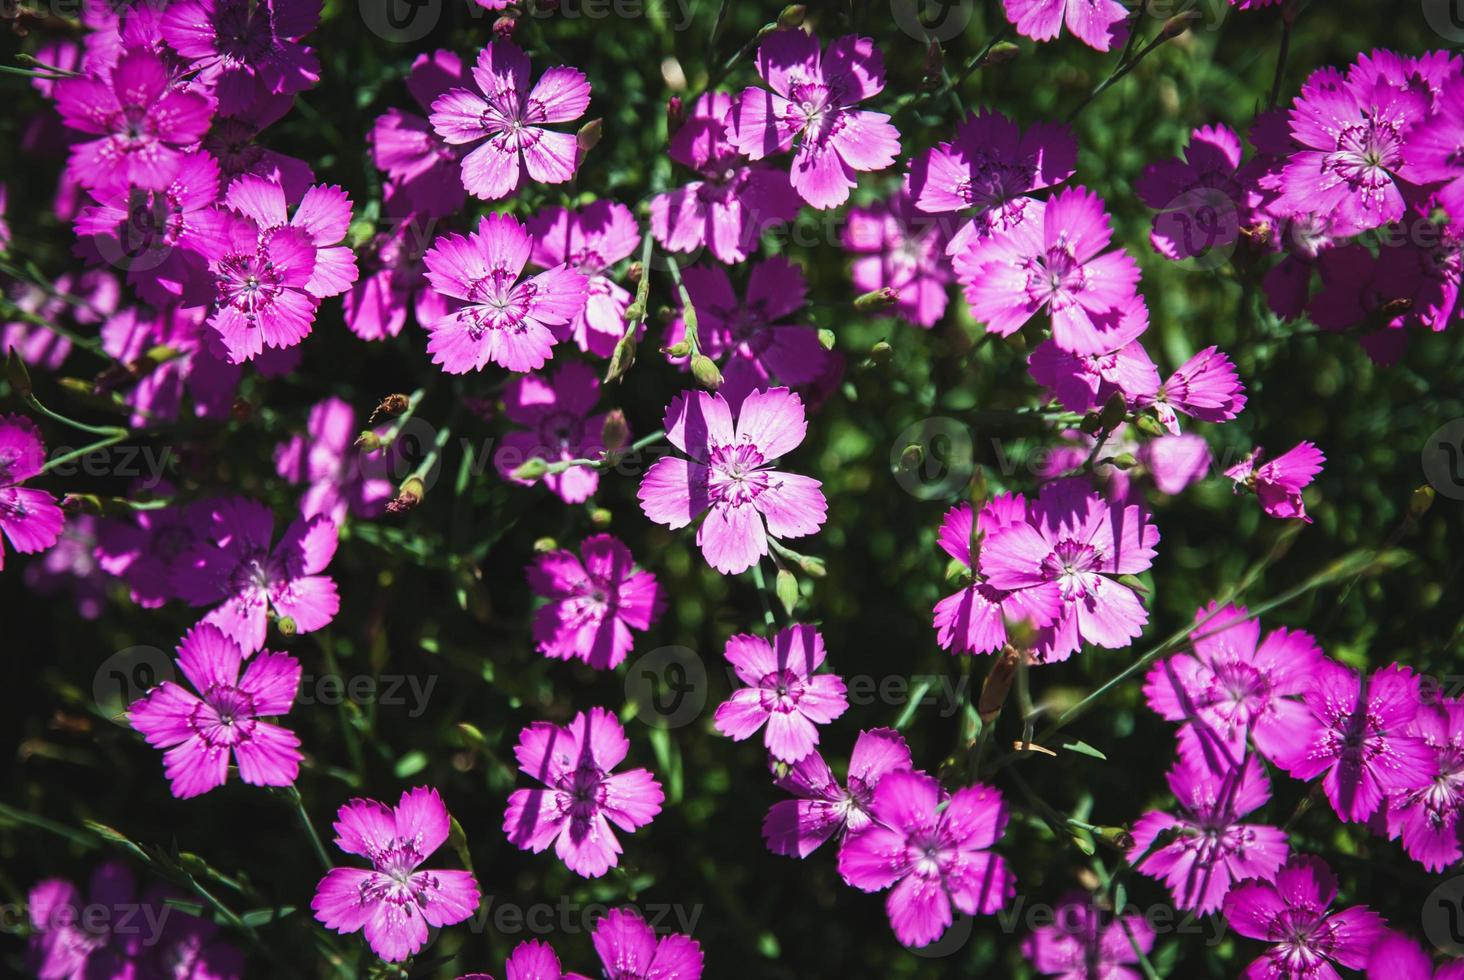 flores cor-de-rosa solteiras, dianthus deltoides roxo vibrante no jardim de verão foto